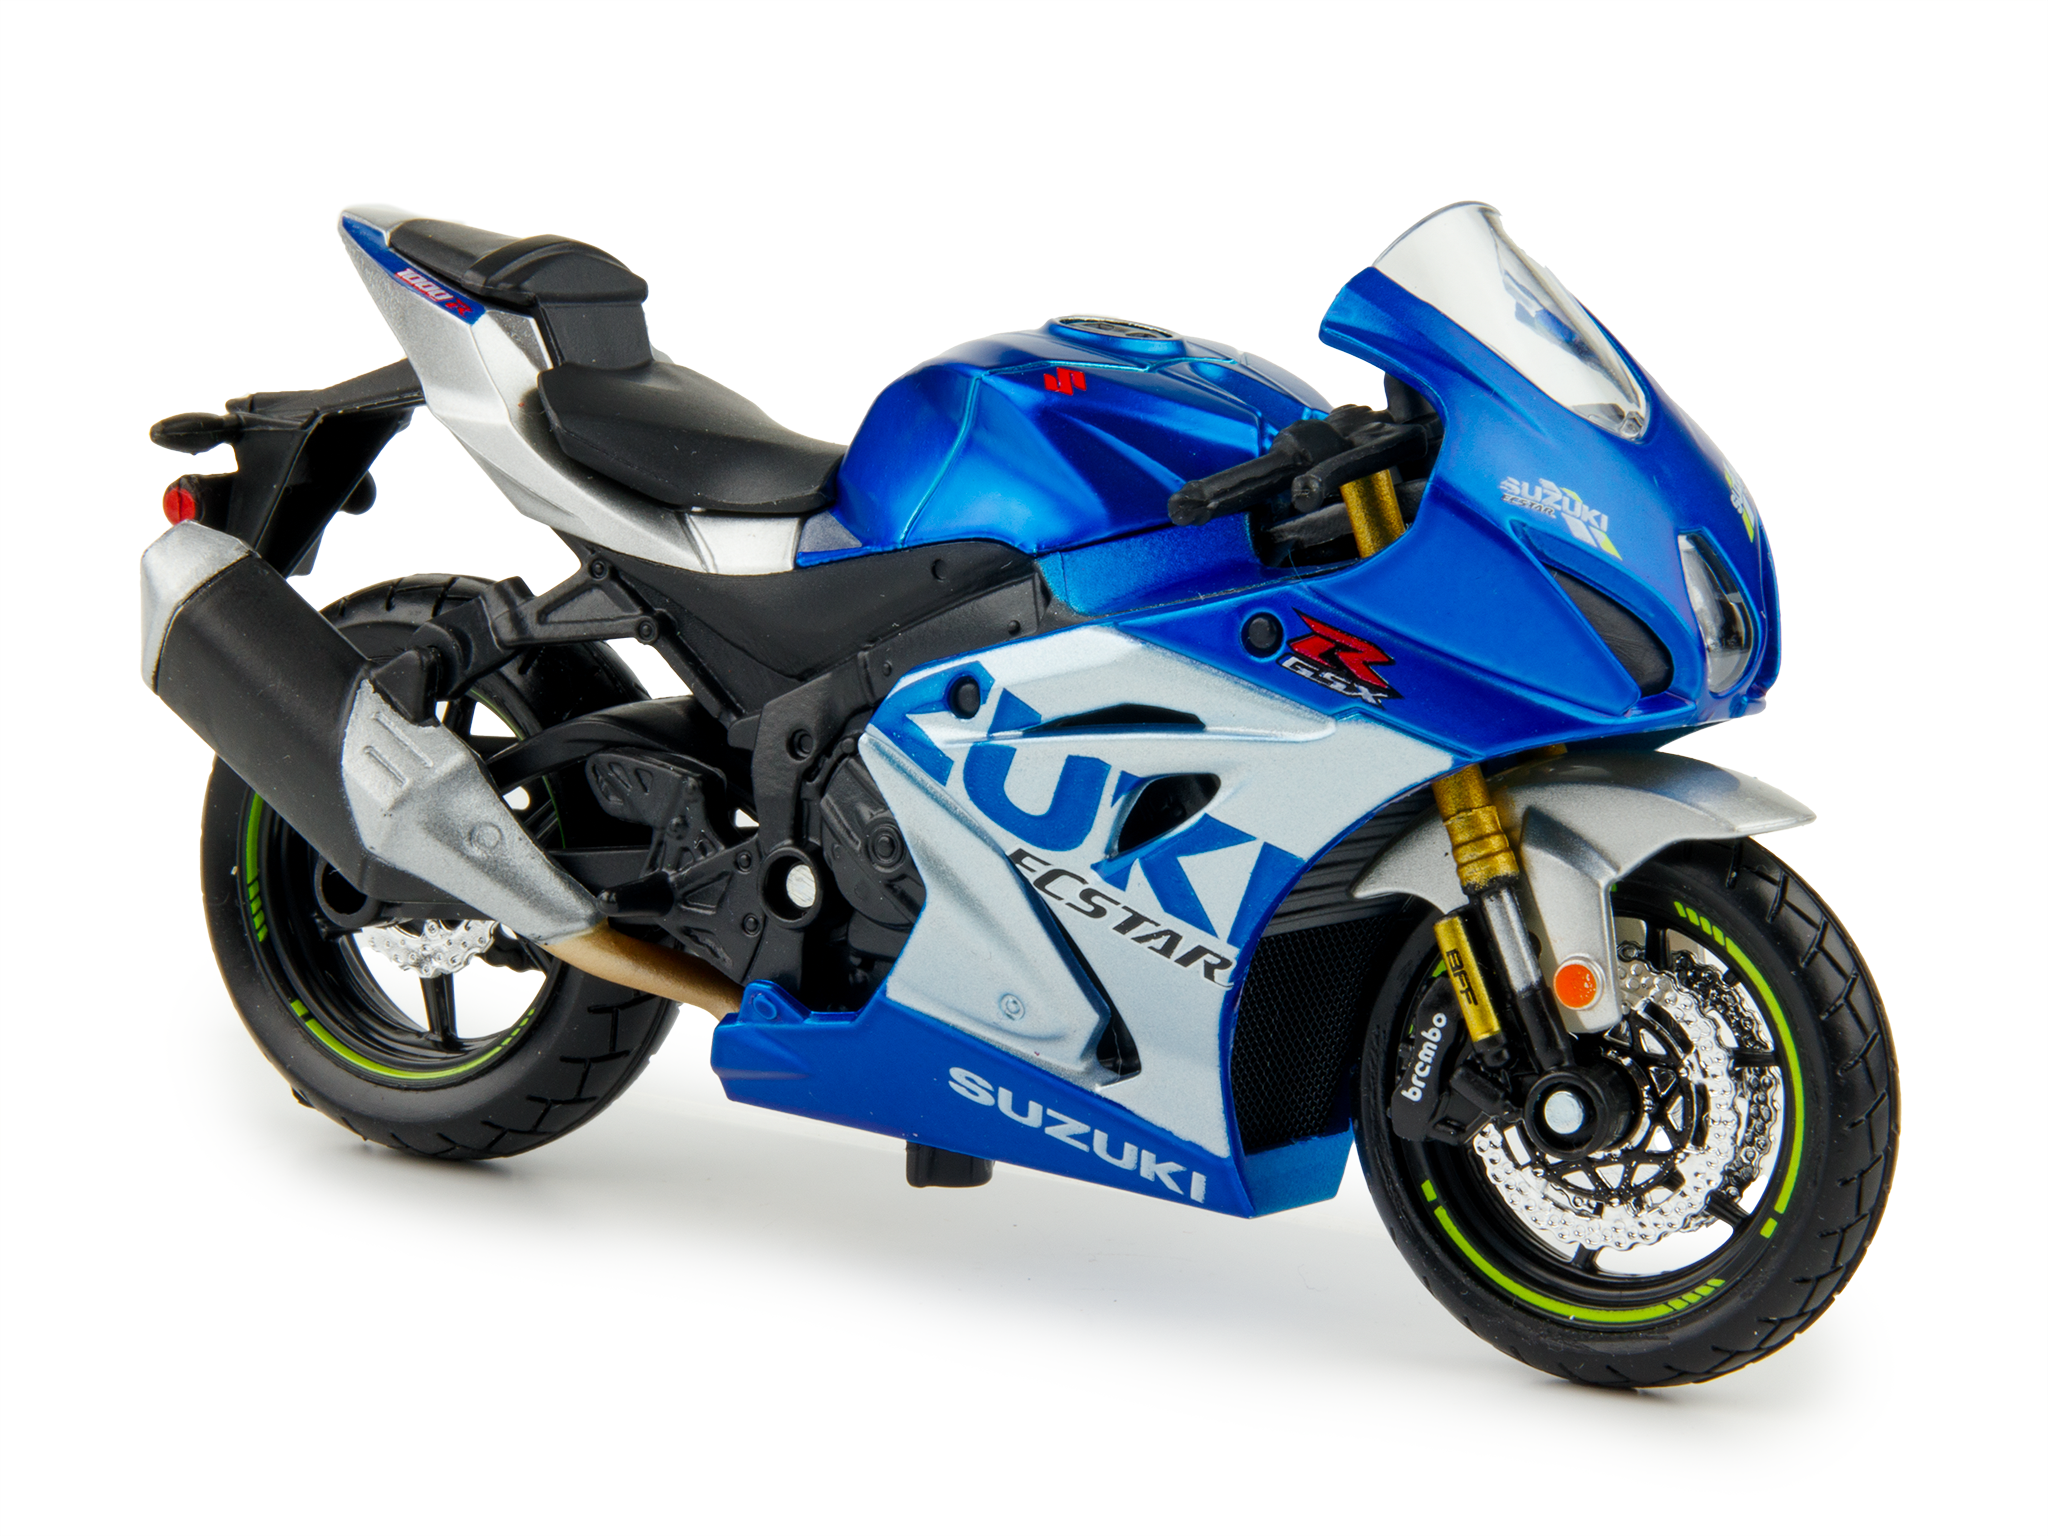 Suzuki GSX-R1000R 2021 blue - 1:18 Scale Diecast Model Motorcycle